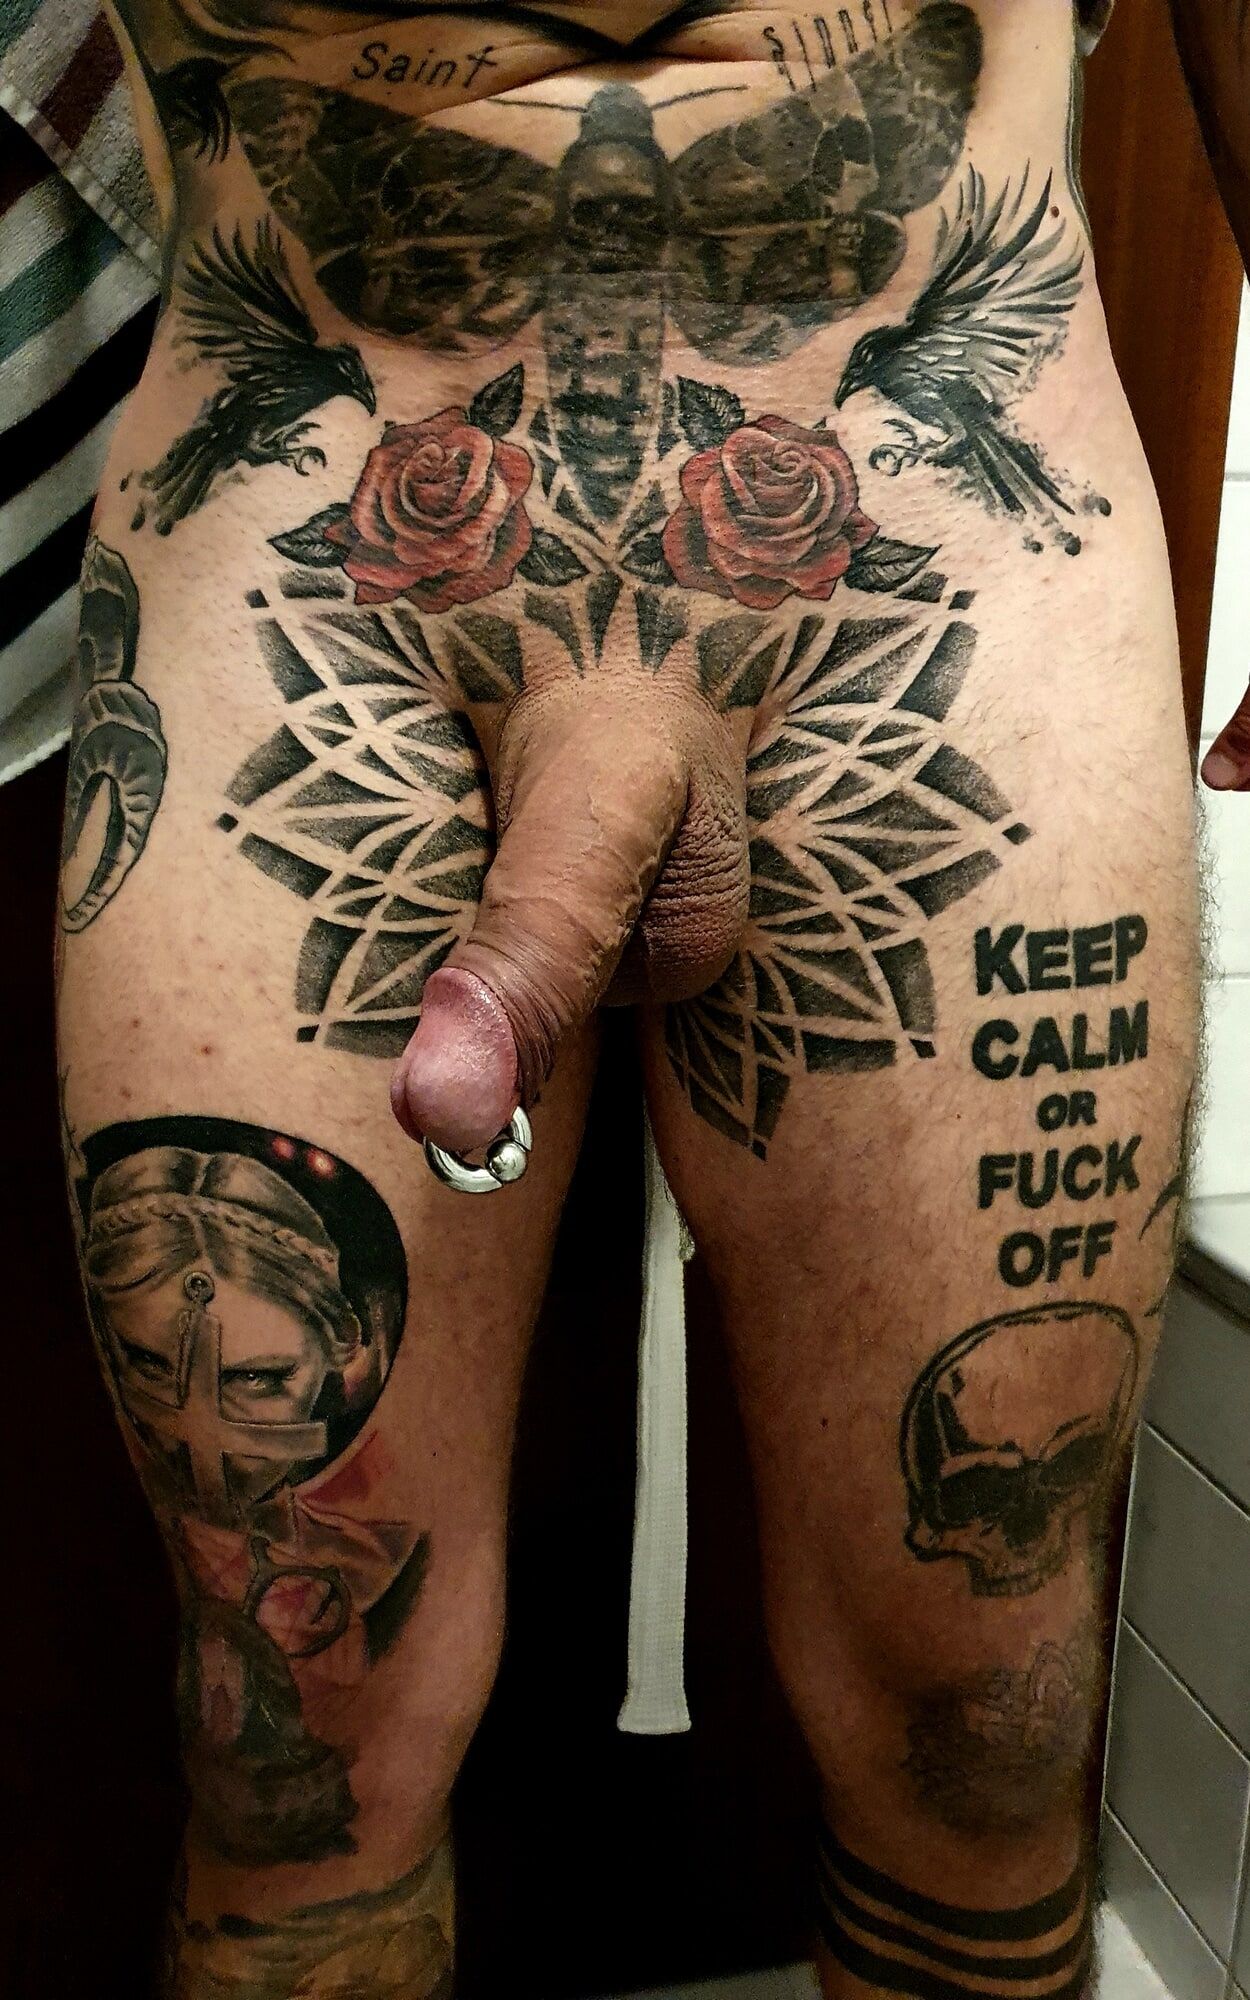 Tattooed & pierced Cock